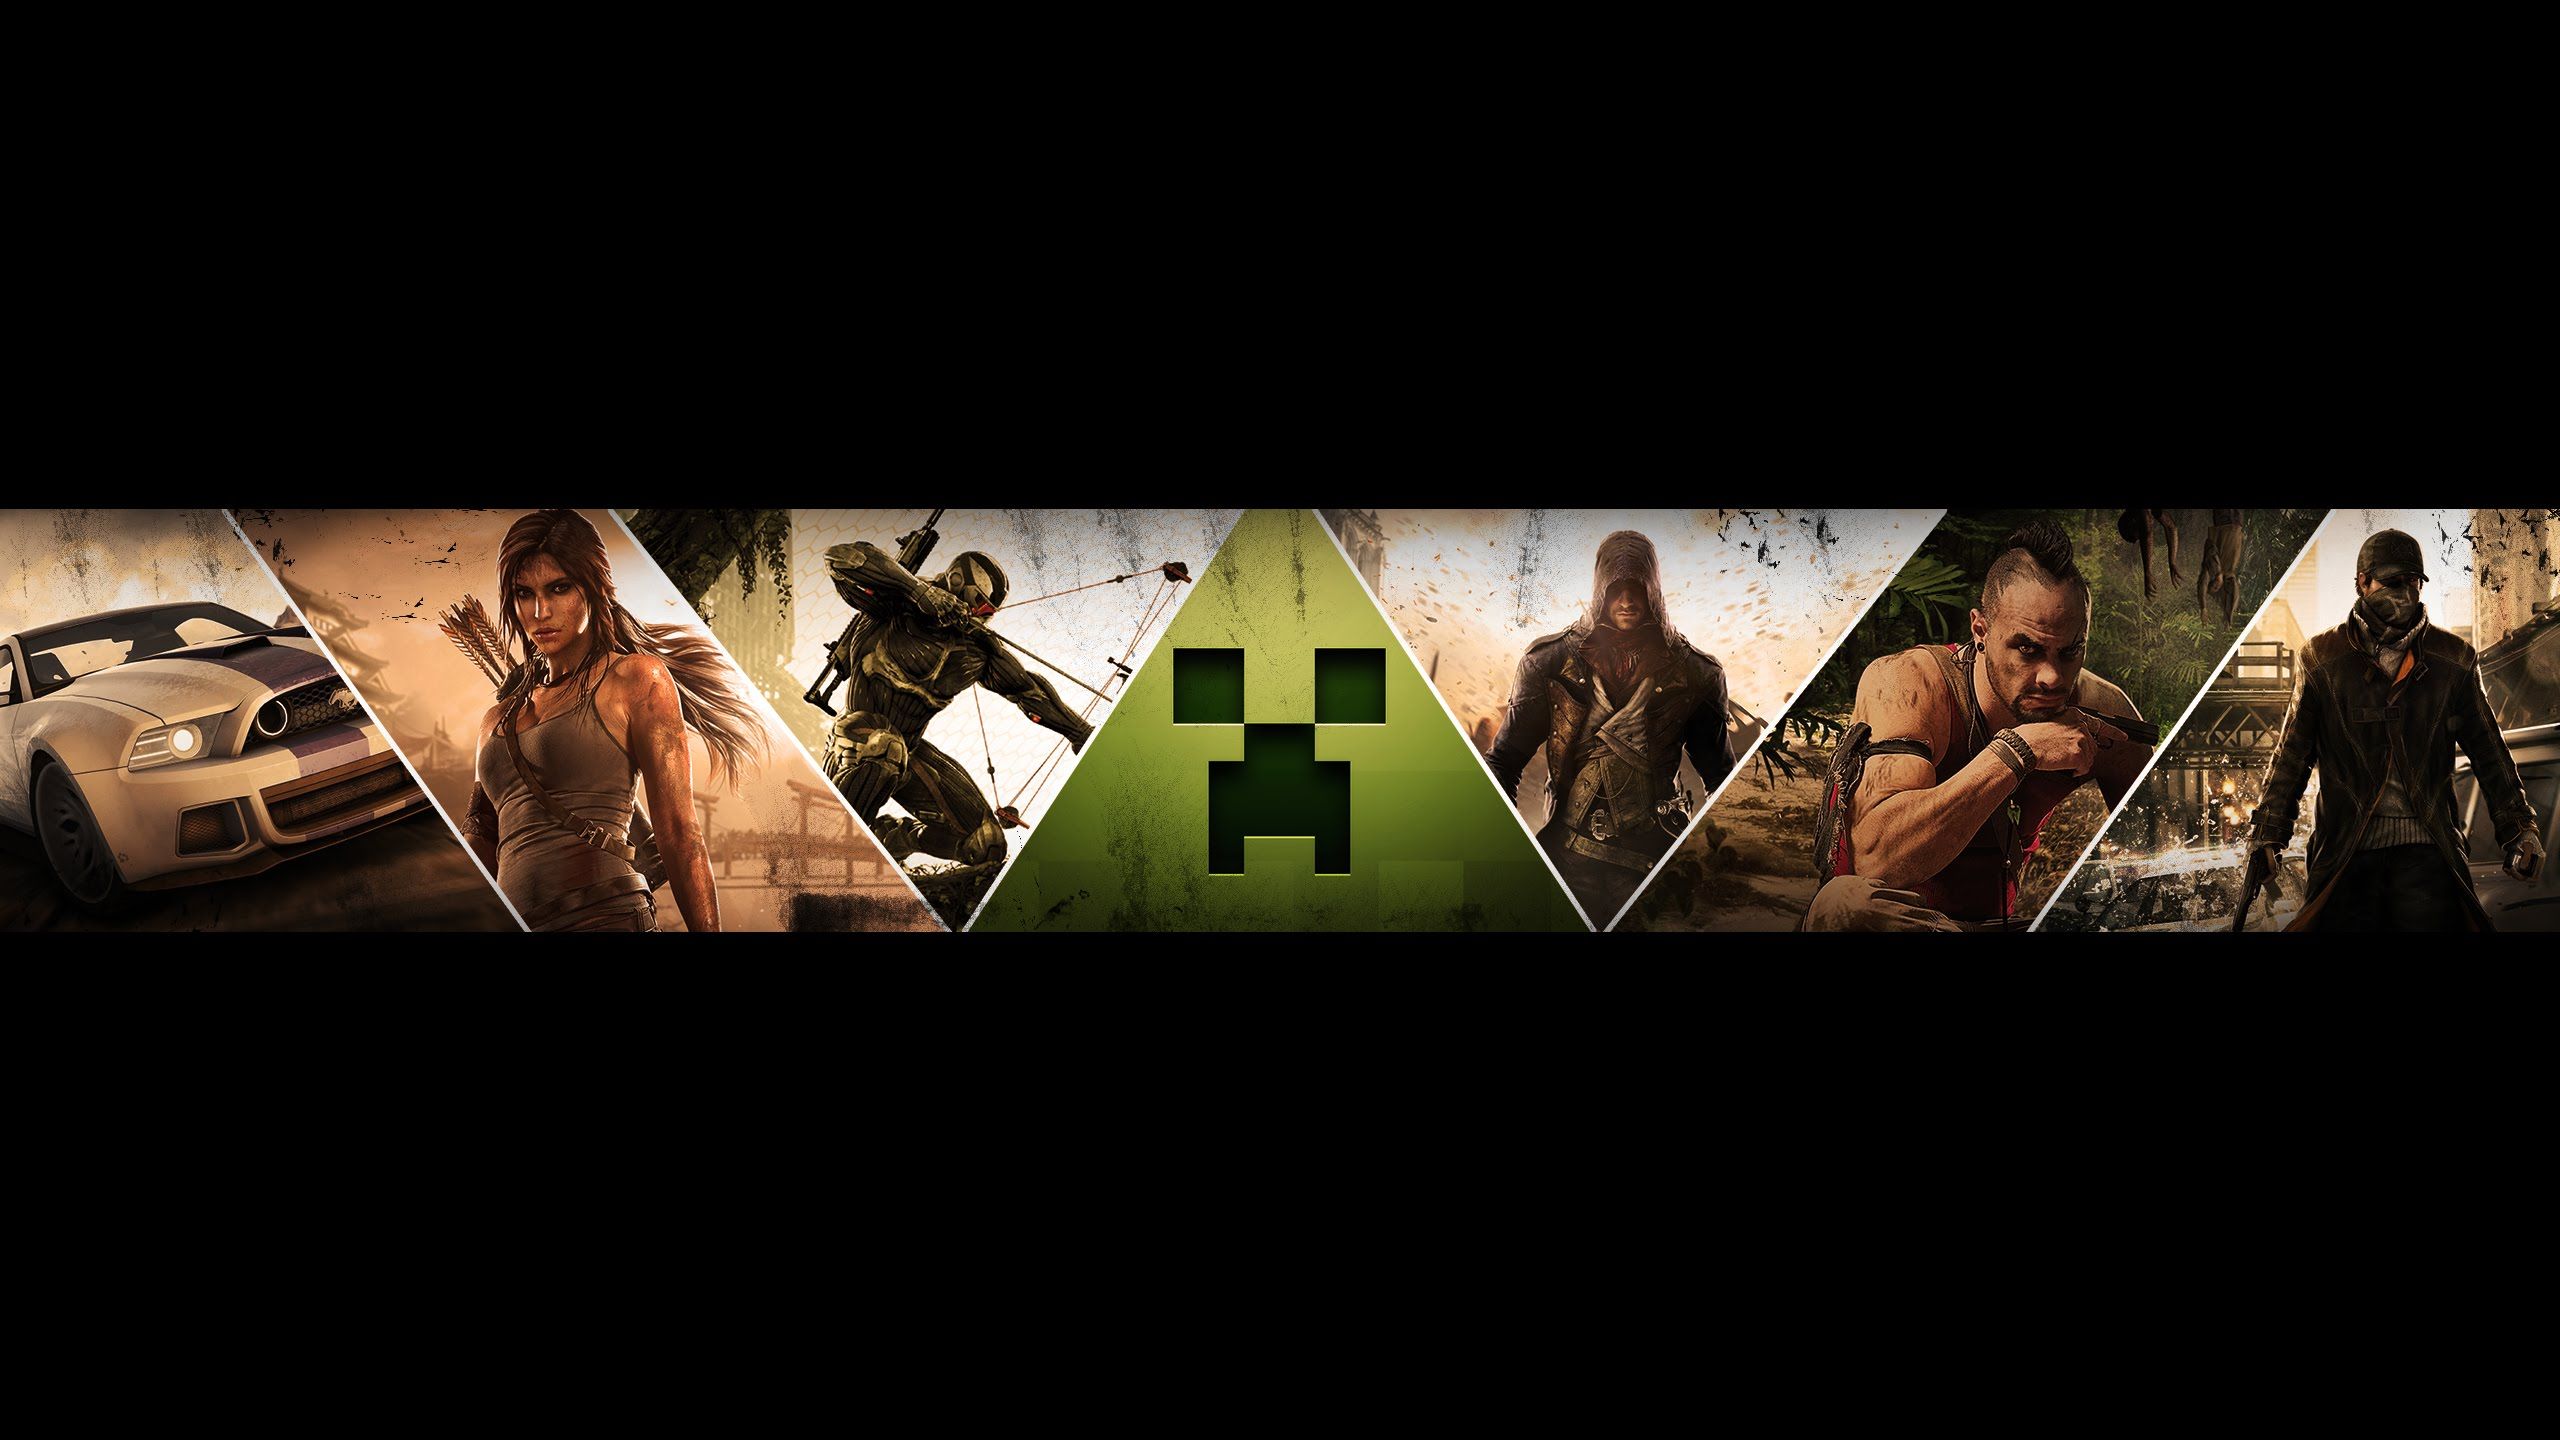 Tổng hợp Gaming banner background Thiết kế chuyên nghiệp, phù hợp cho game thủ